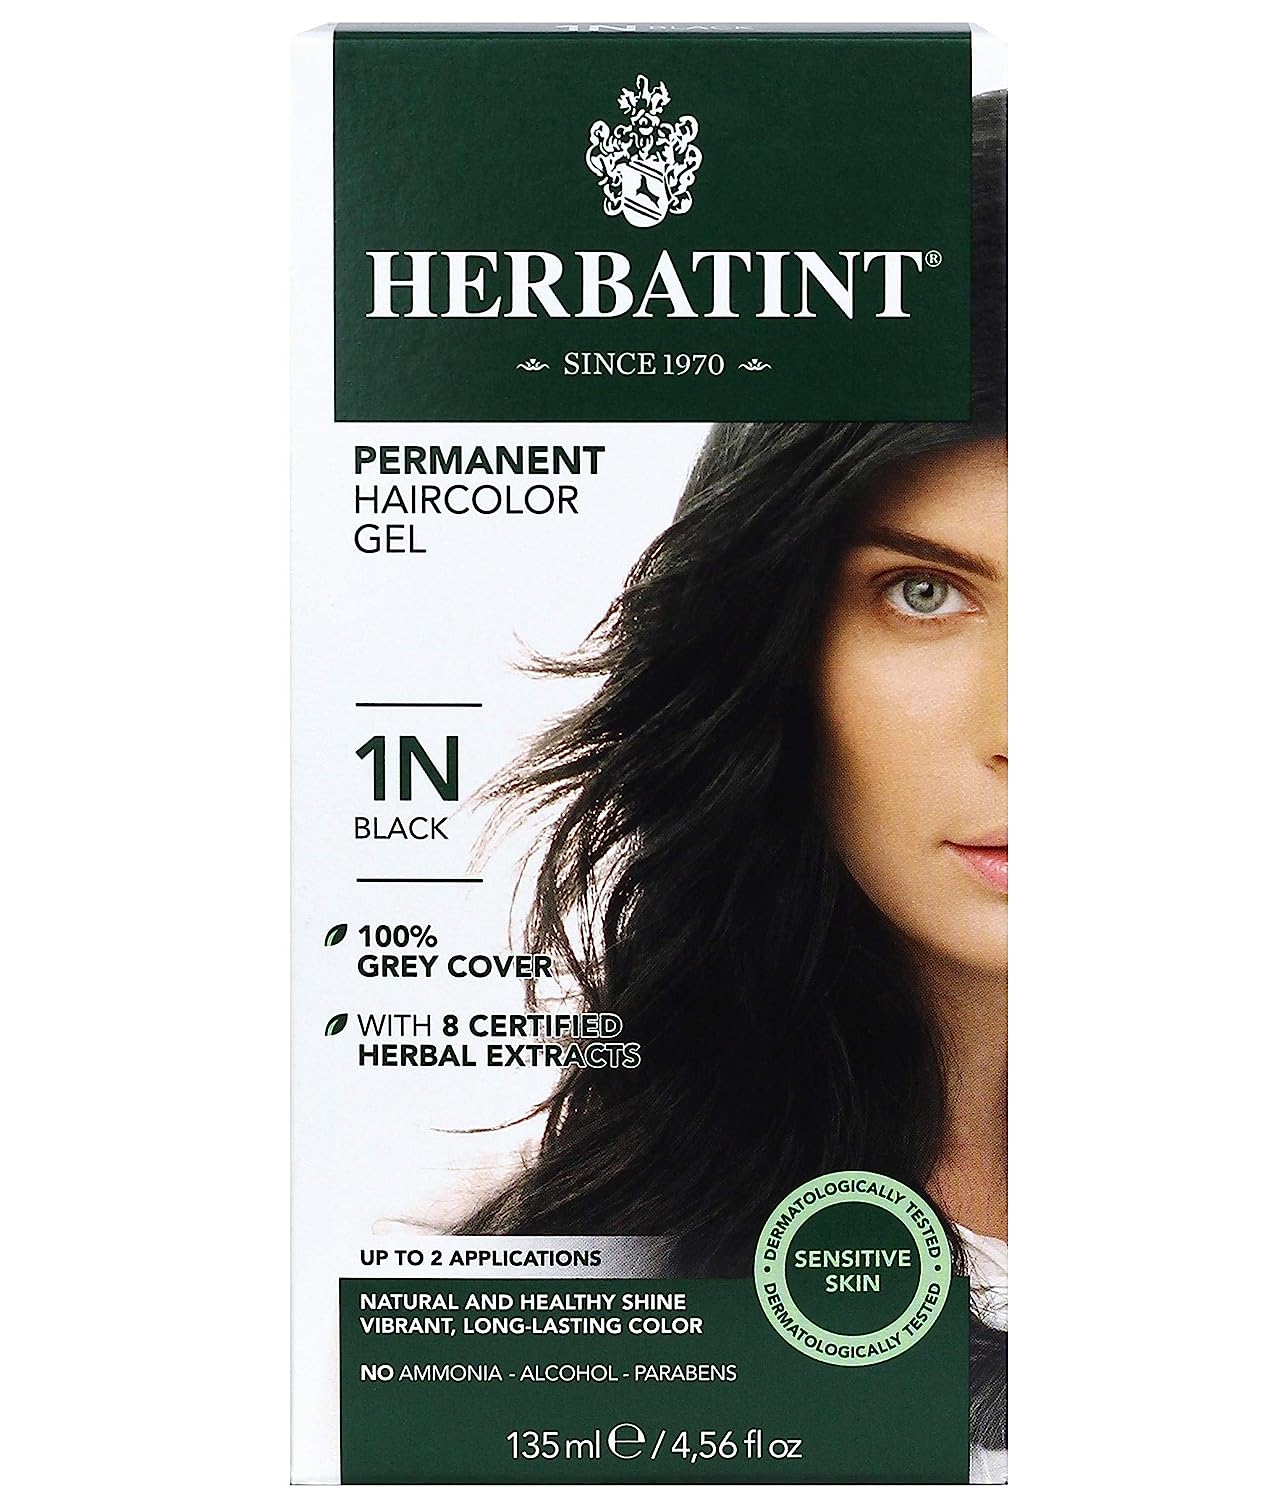 Herbatint Permanent Haircolor Gel, 1N Black, Alcohol [...]